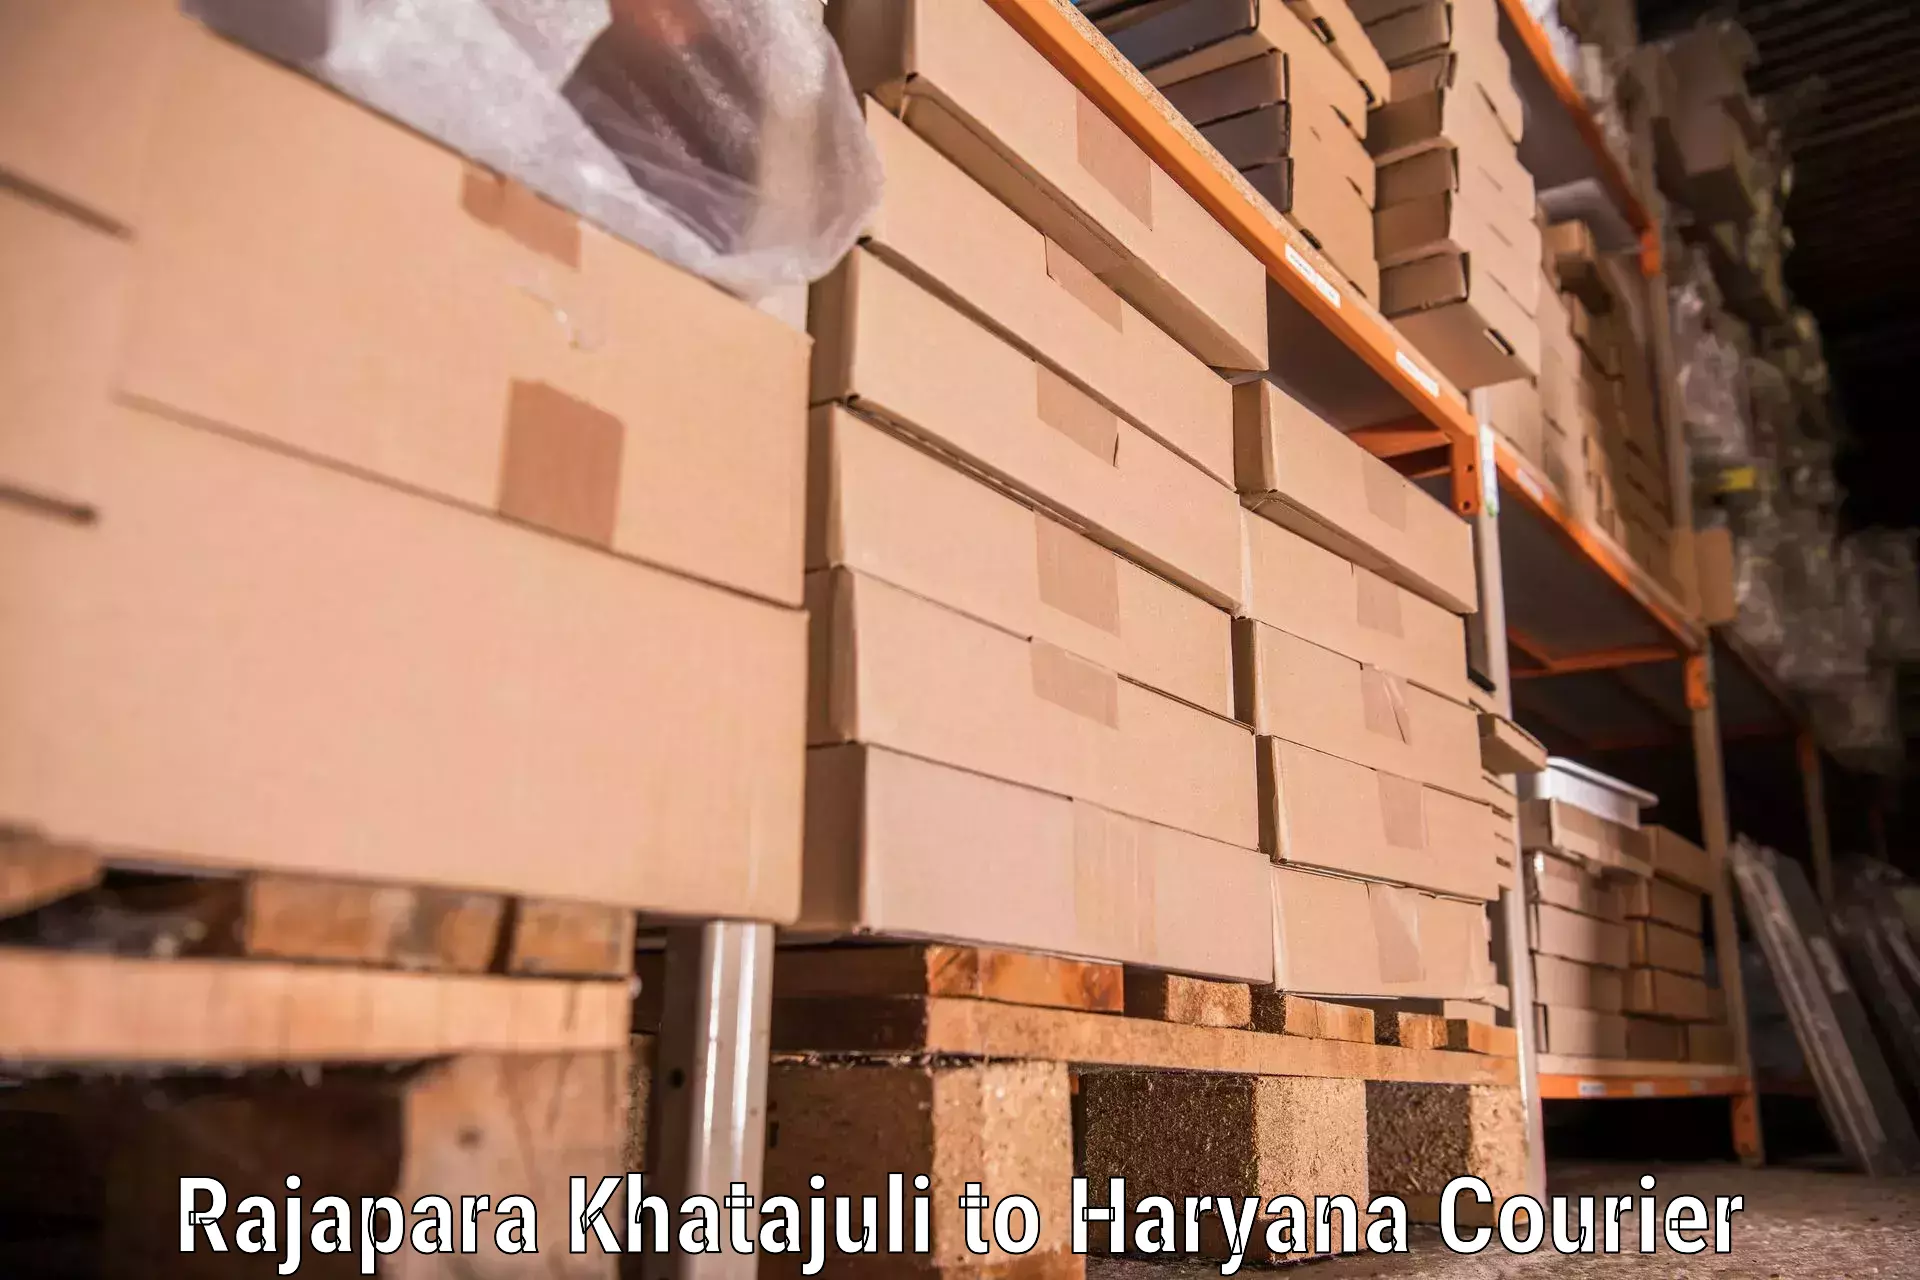 Furniture moving strategies Rajapara Khatajuli to Odhan